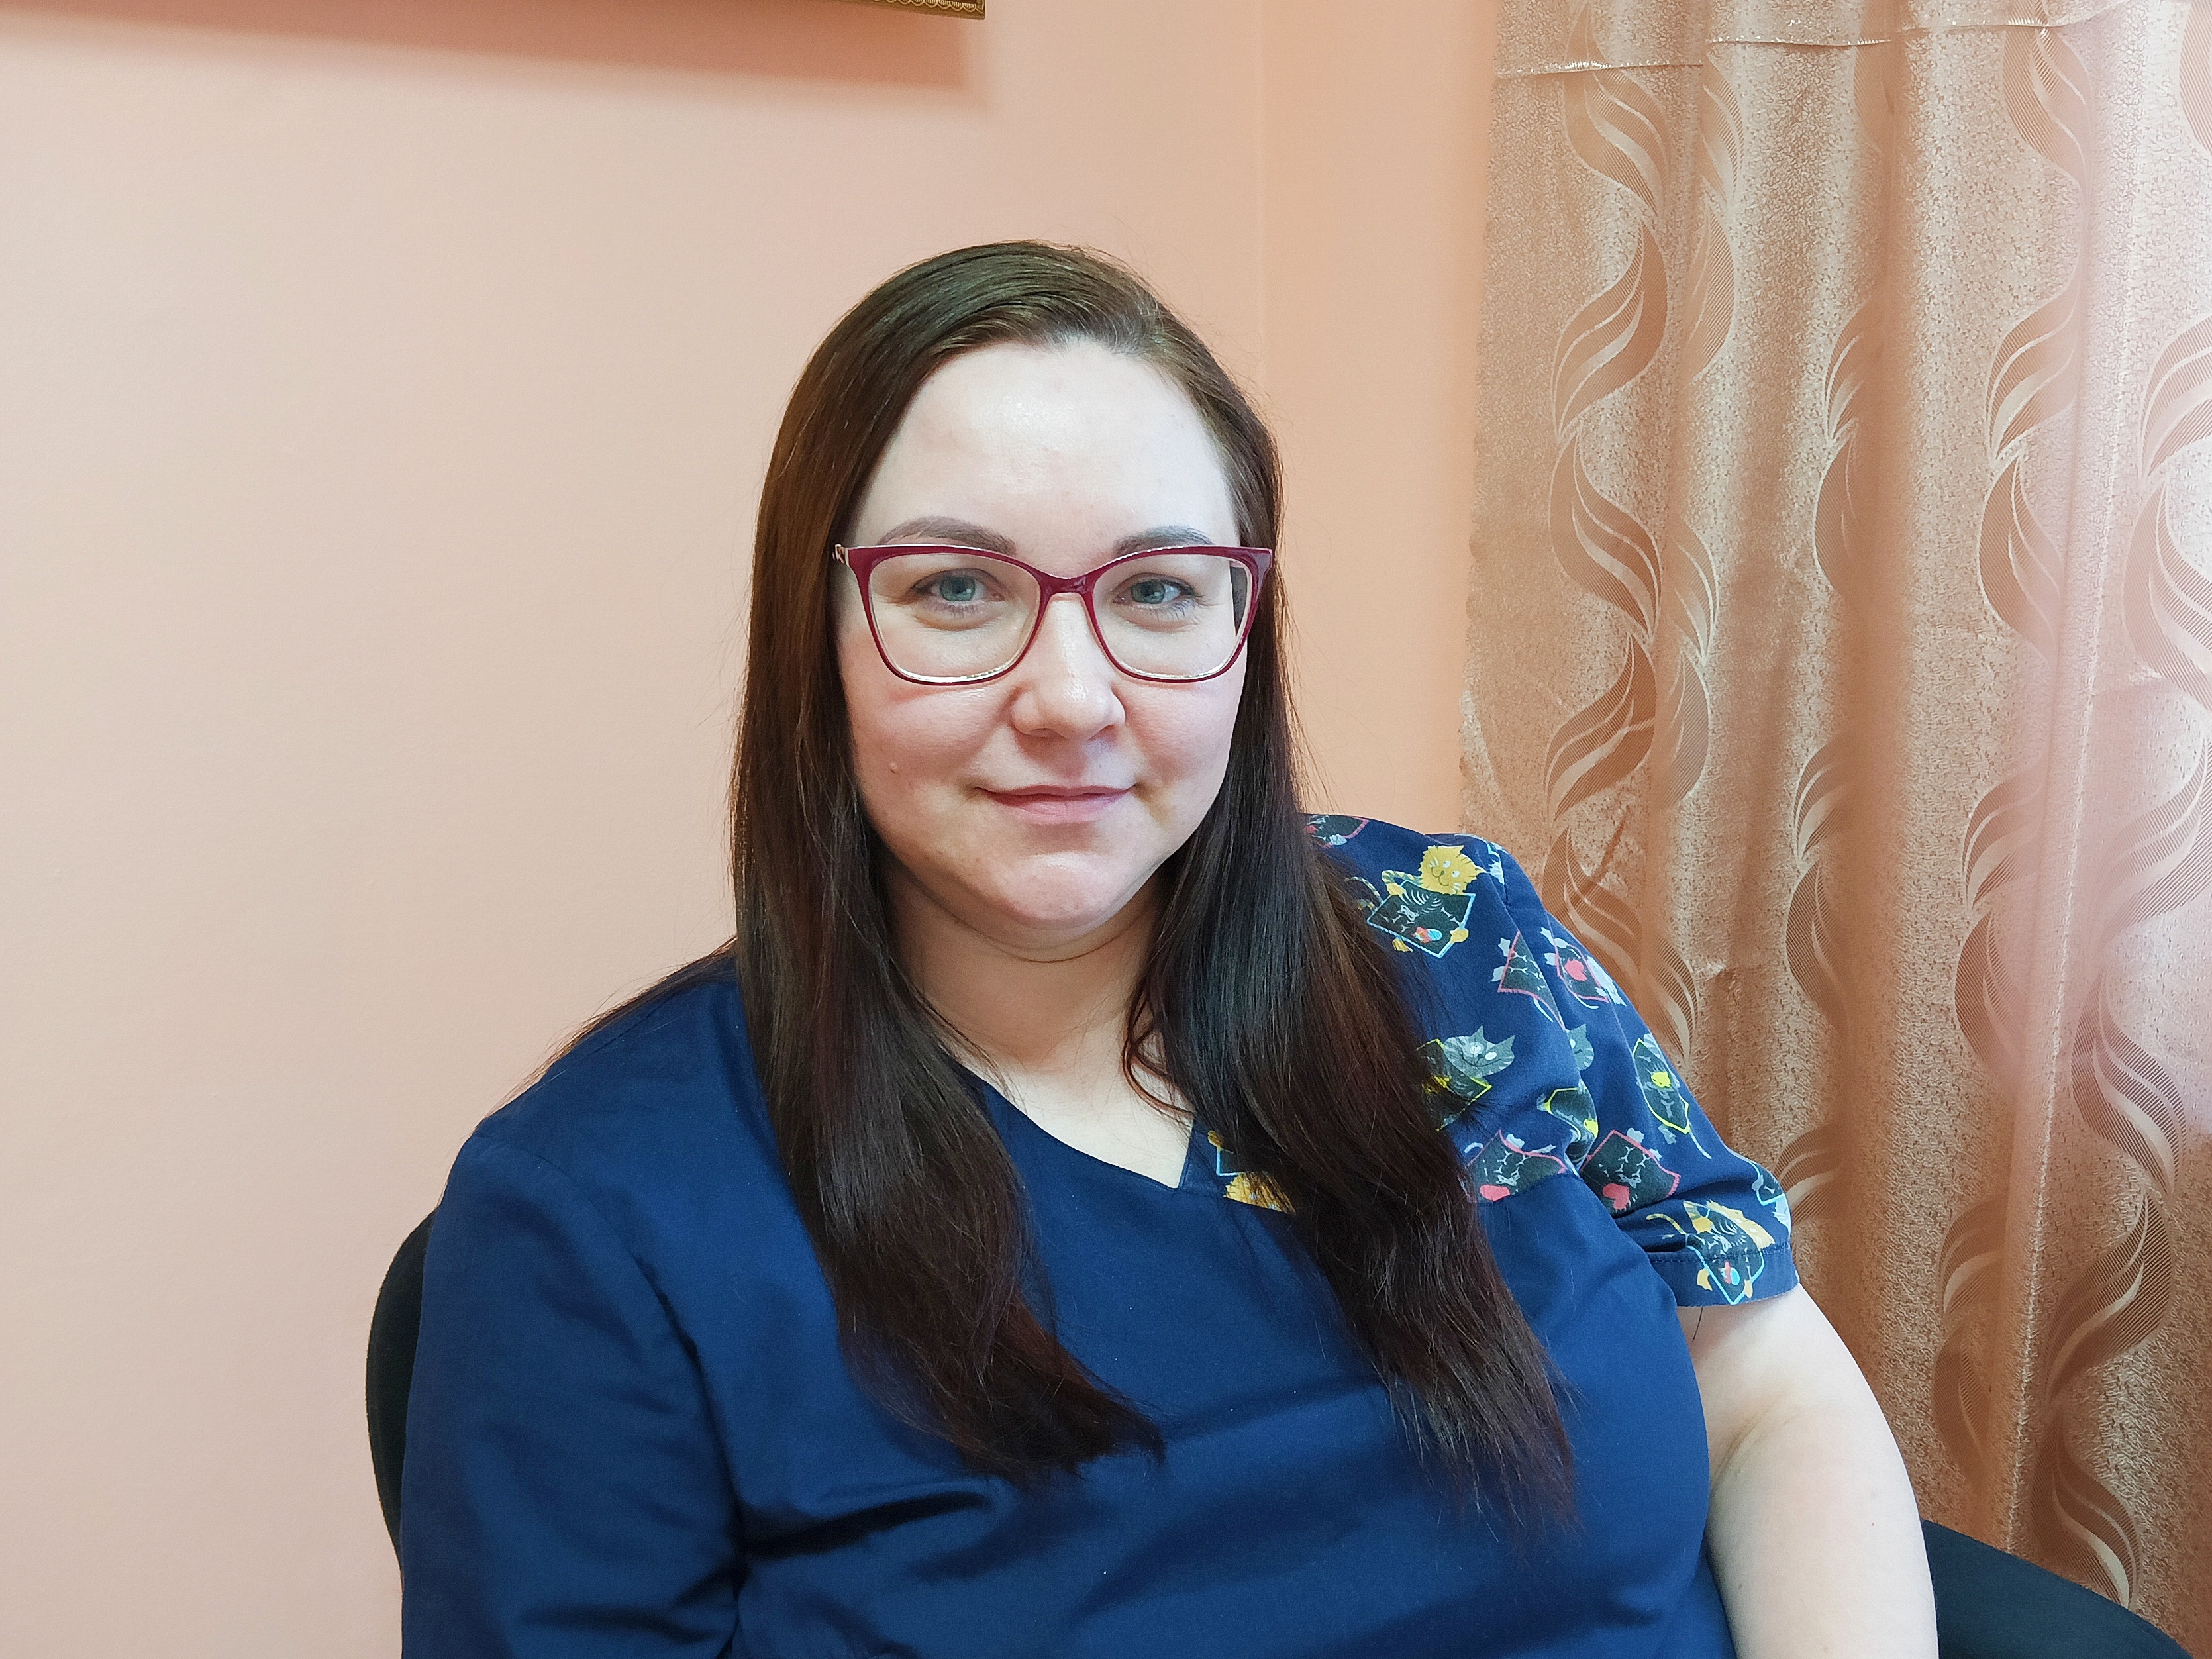 Мария Горюнова – врач-онколог, маммолог, врач ультразвуковой диагностики. Окончила Алтайский государственный медицинский университет в 2010 г., работала в МСЧ № 91 Лесного с 2011 г., с апреля 2022 года – онколог Нижнетуринской больницы